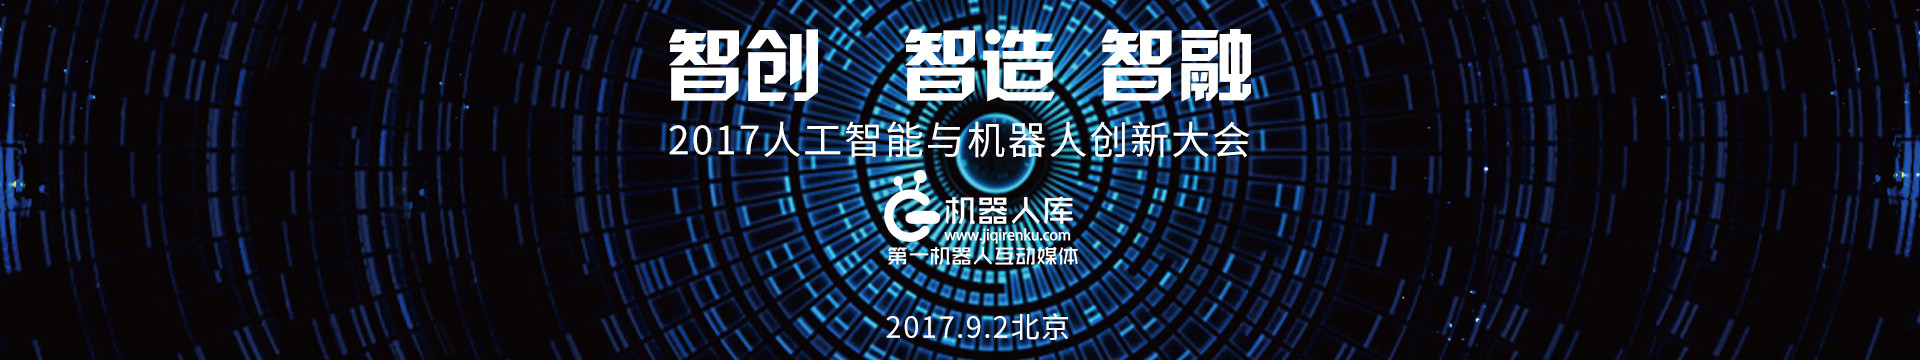 2017中国人工智能与机器人创新大会